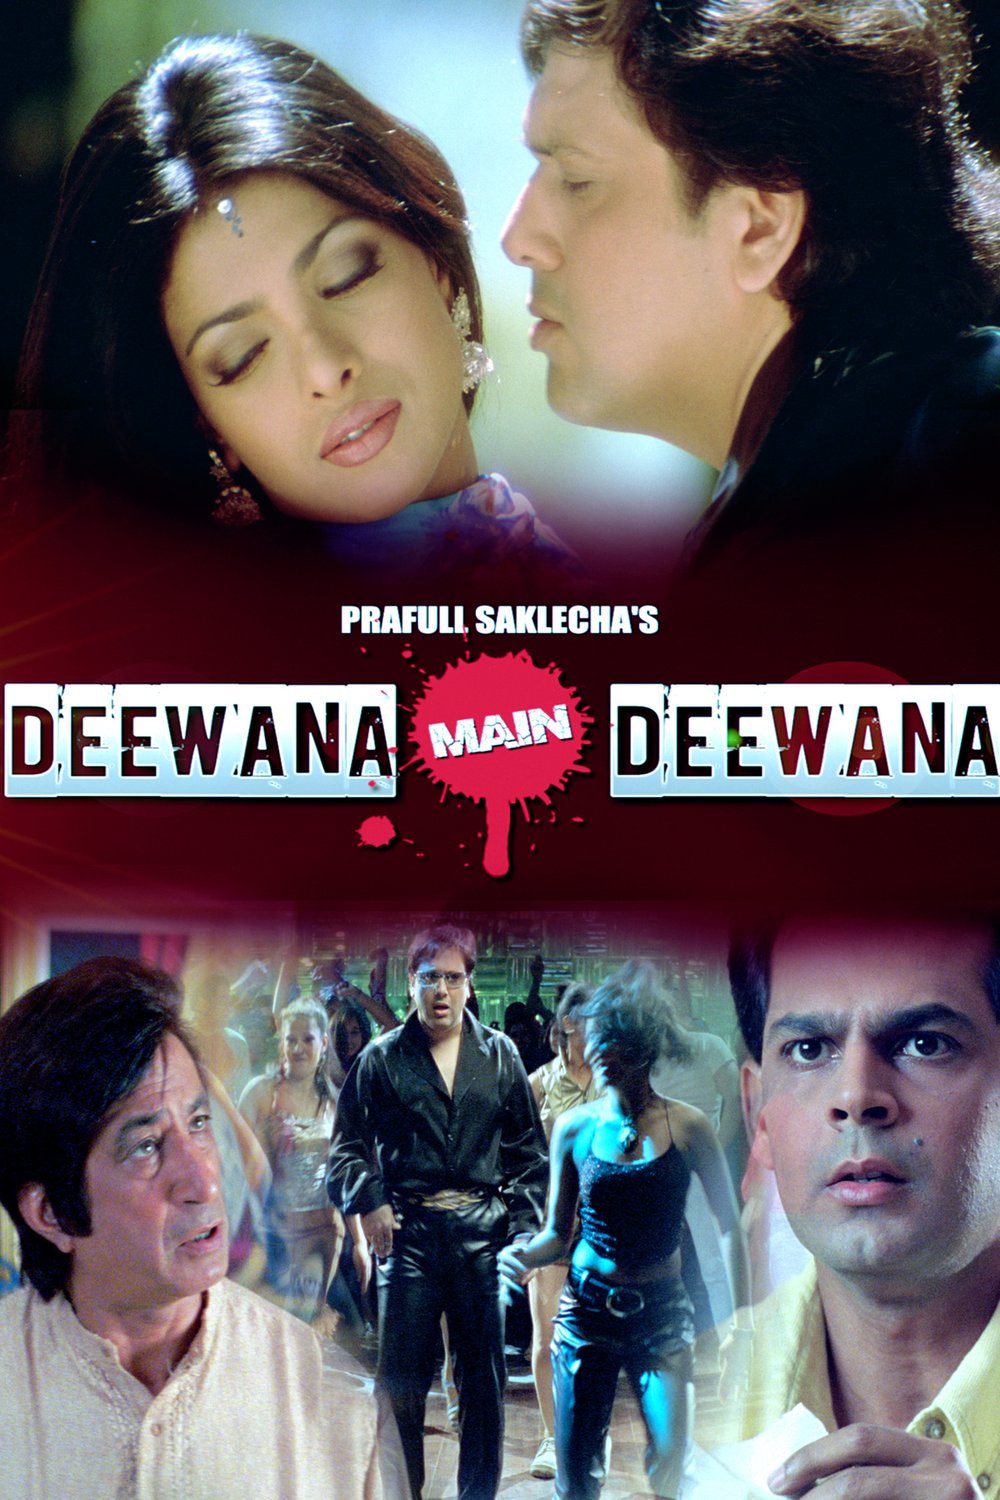 L'affiche originale du film Deewana Main Deewana en Hindi